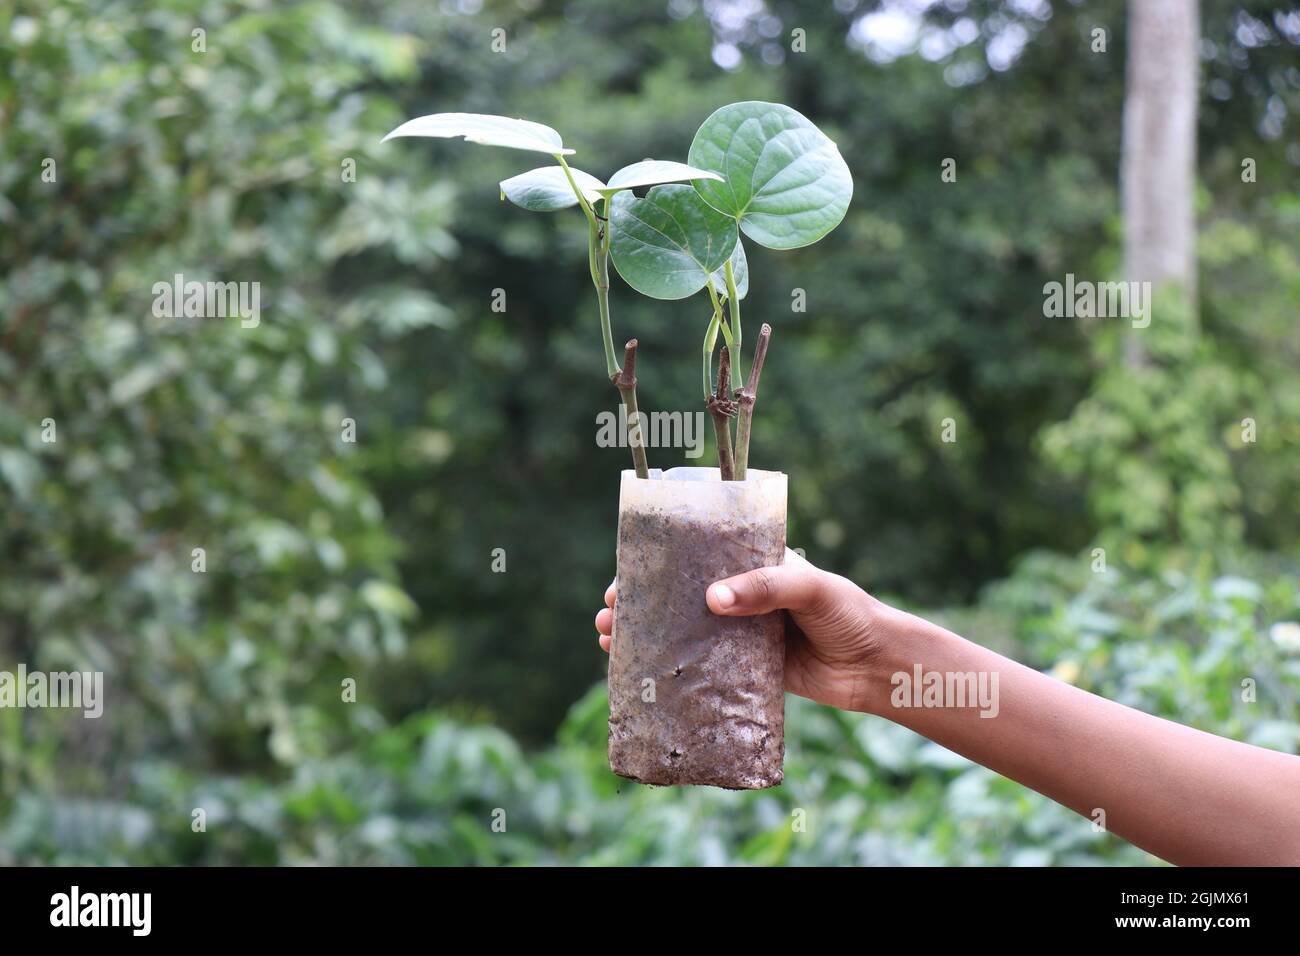 Pianta di pepe coltivata su plastica del vivaio, tagli di pianta di pepe nero pronti per essere piantati sul terreno Foto Stock